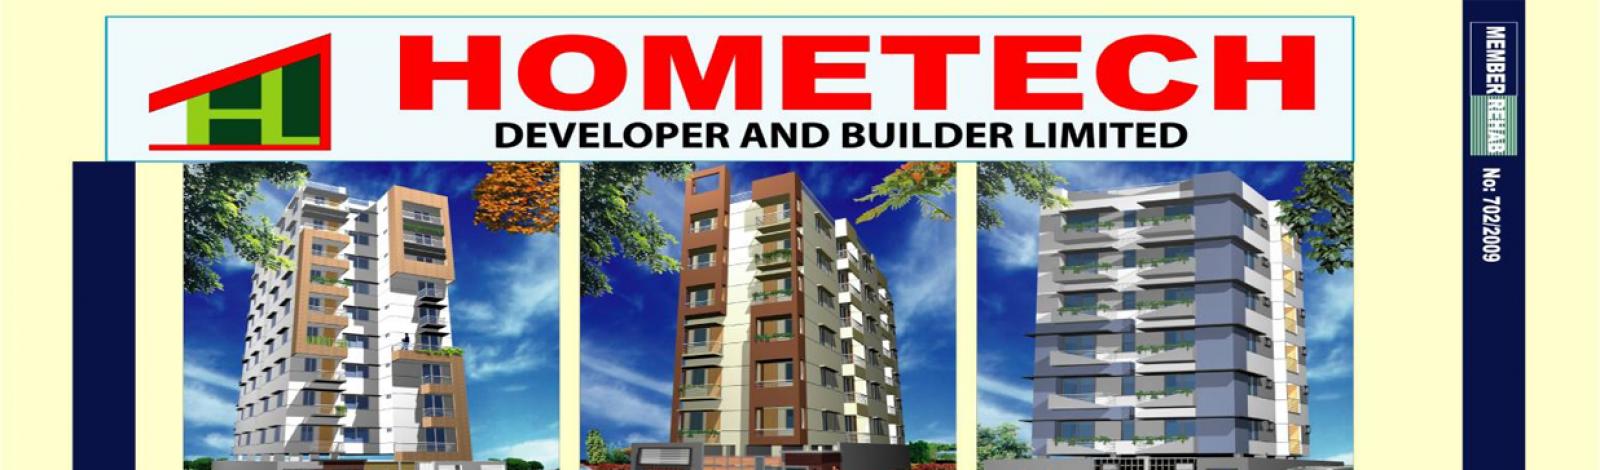 Hometech Developer & Builder Limited banner